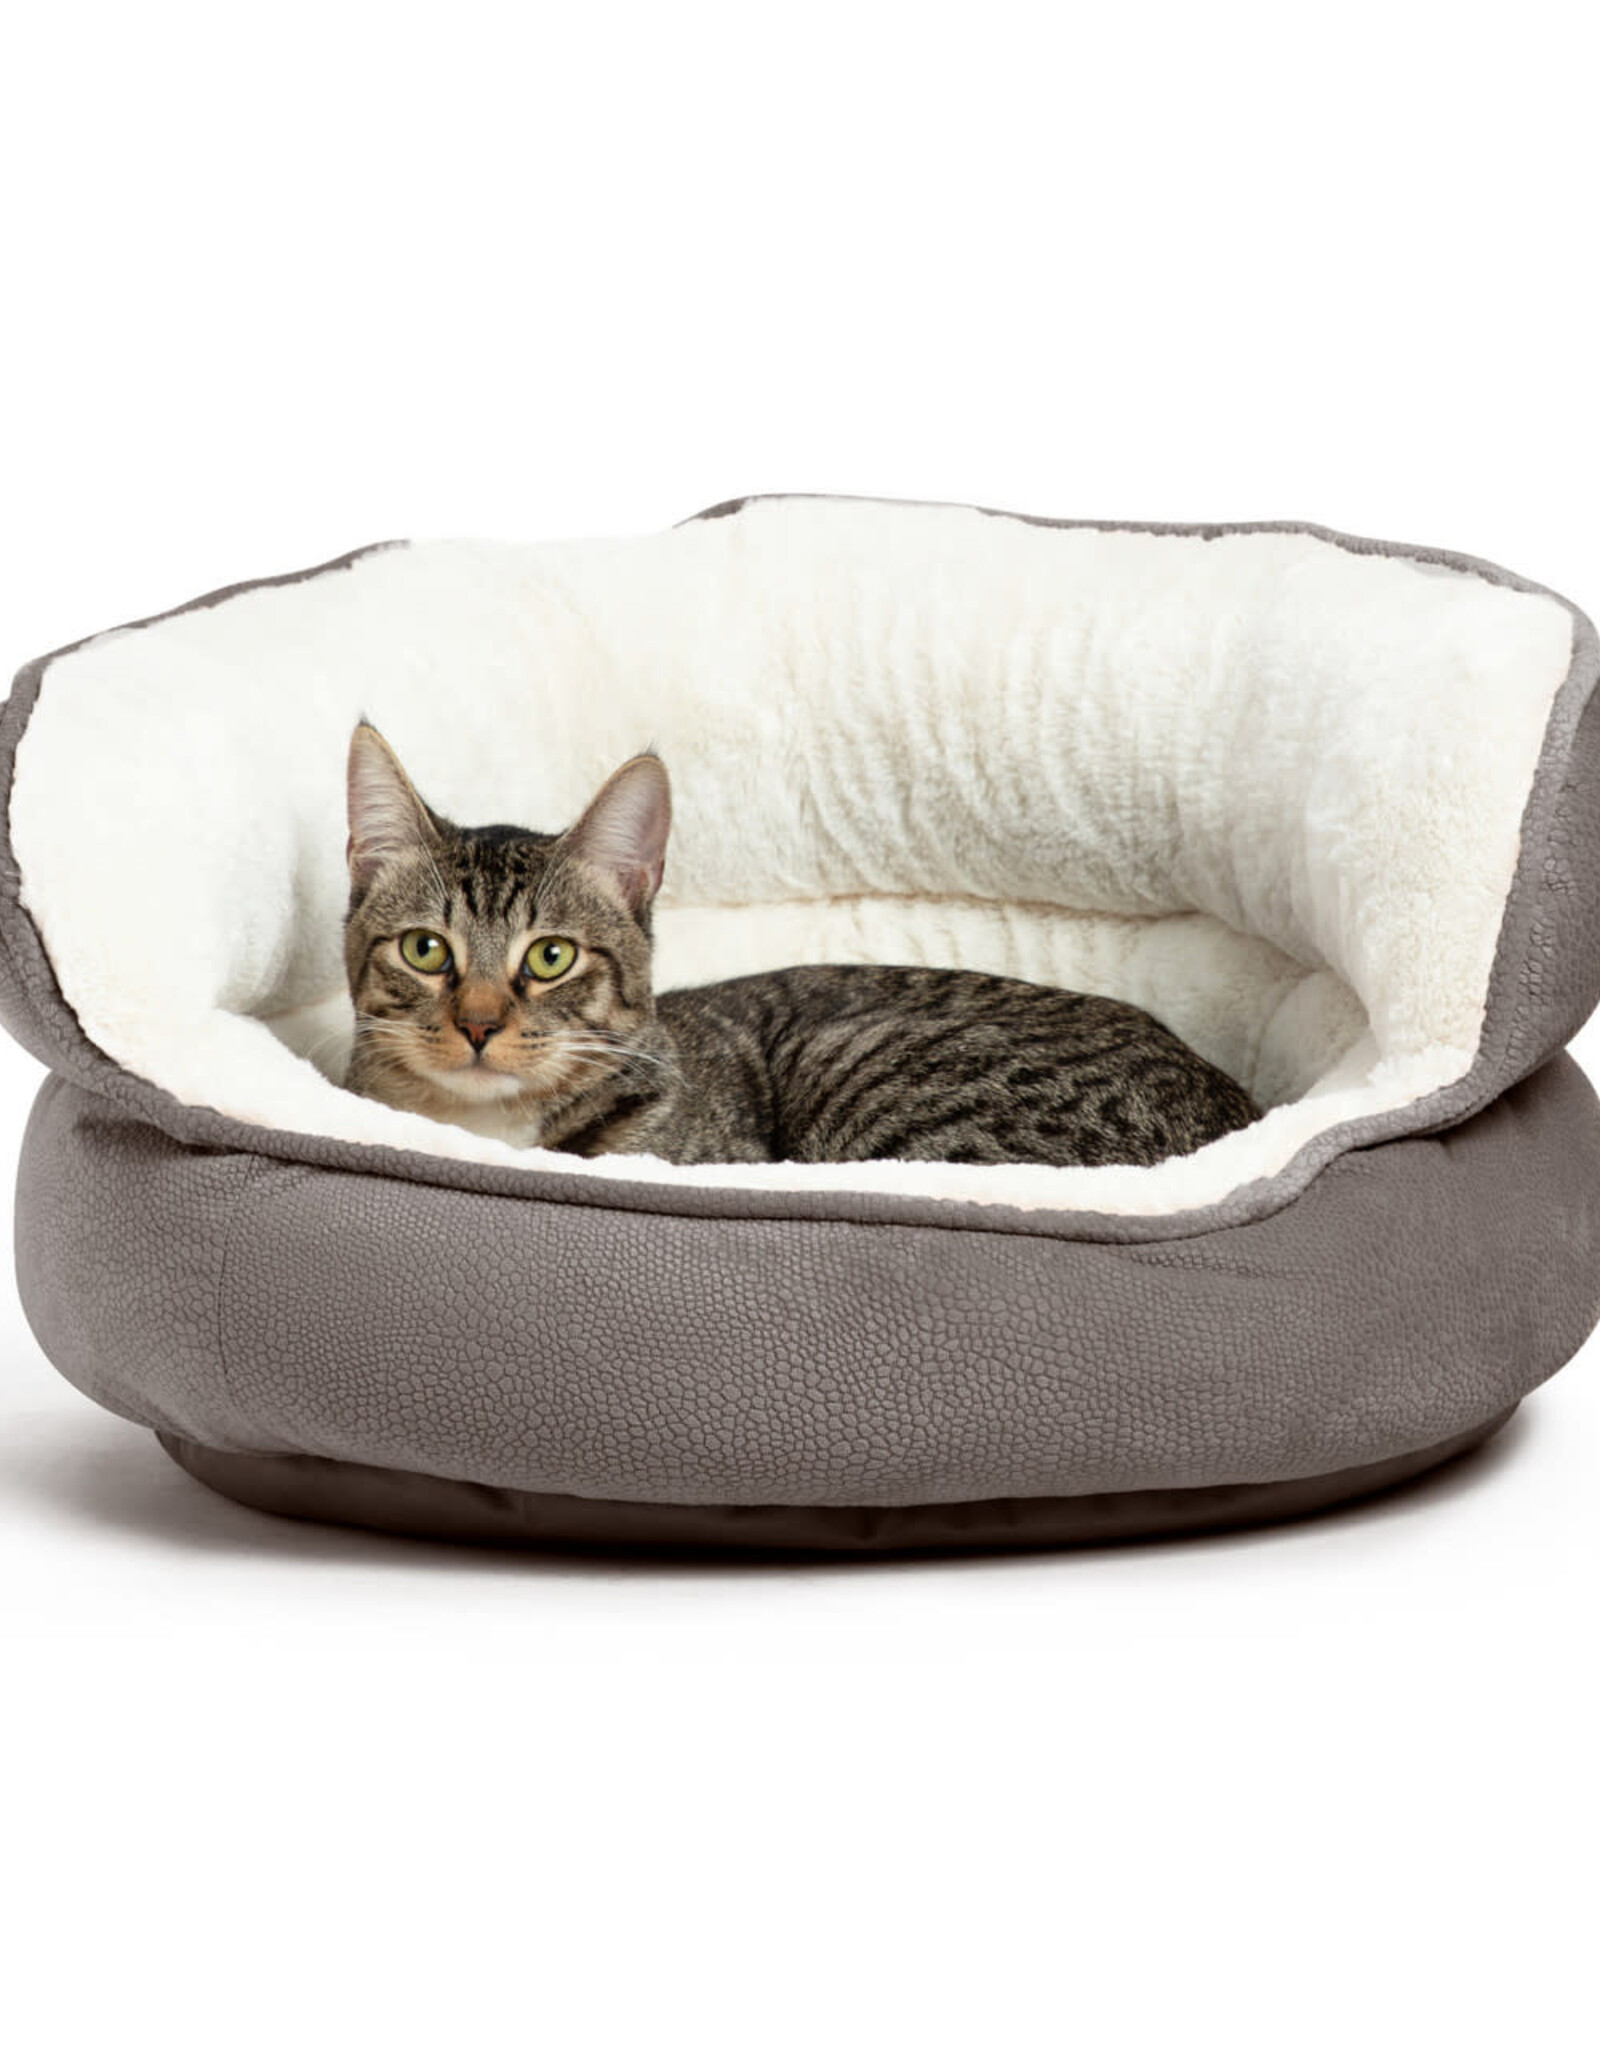 Outward Hound Ilan Throne Cat & Dog Bed 22x21